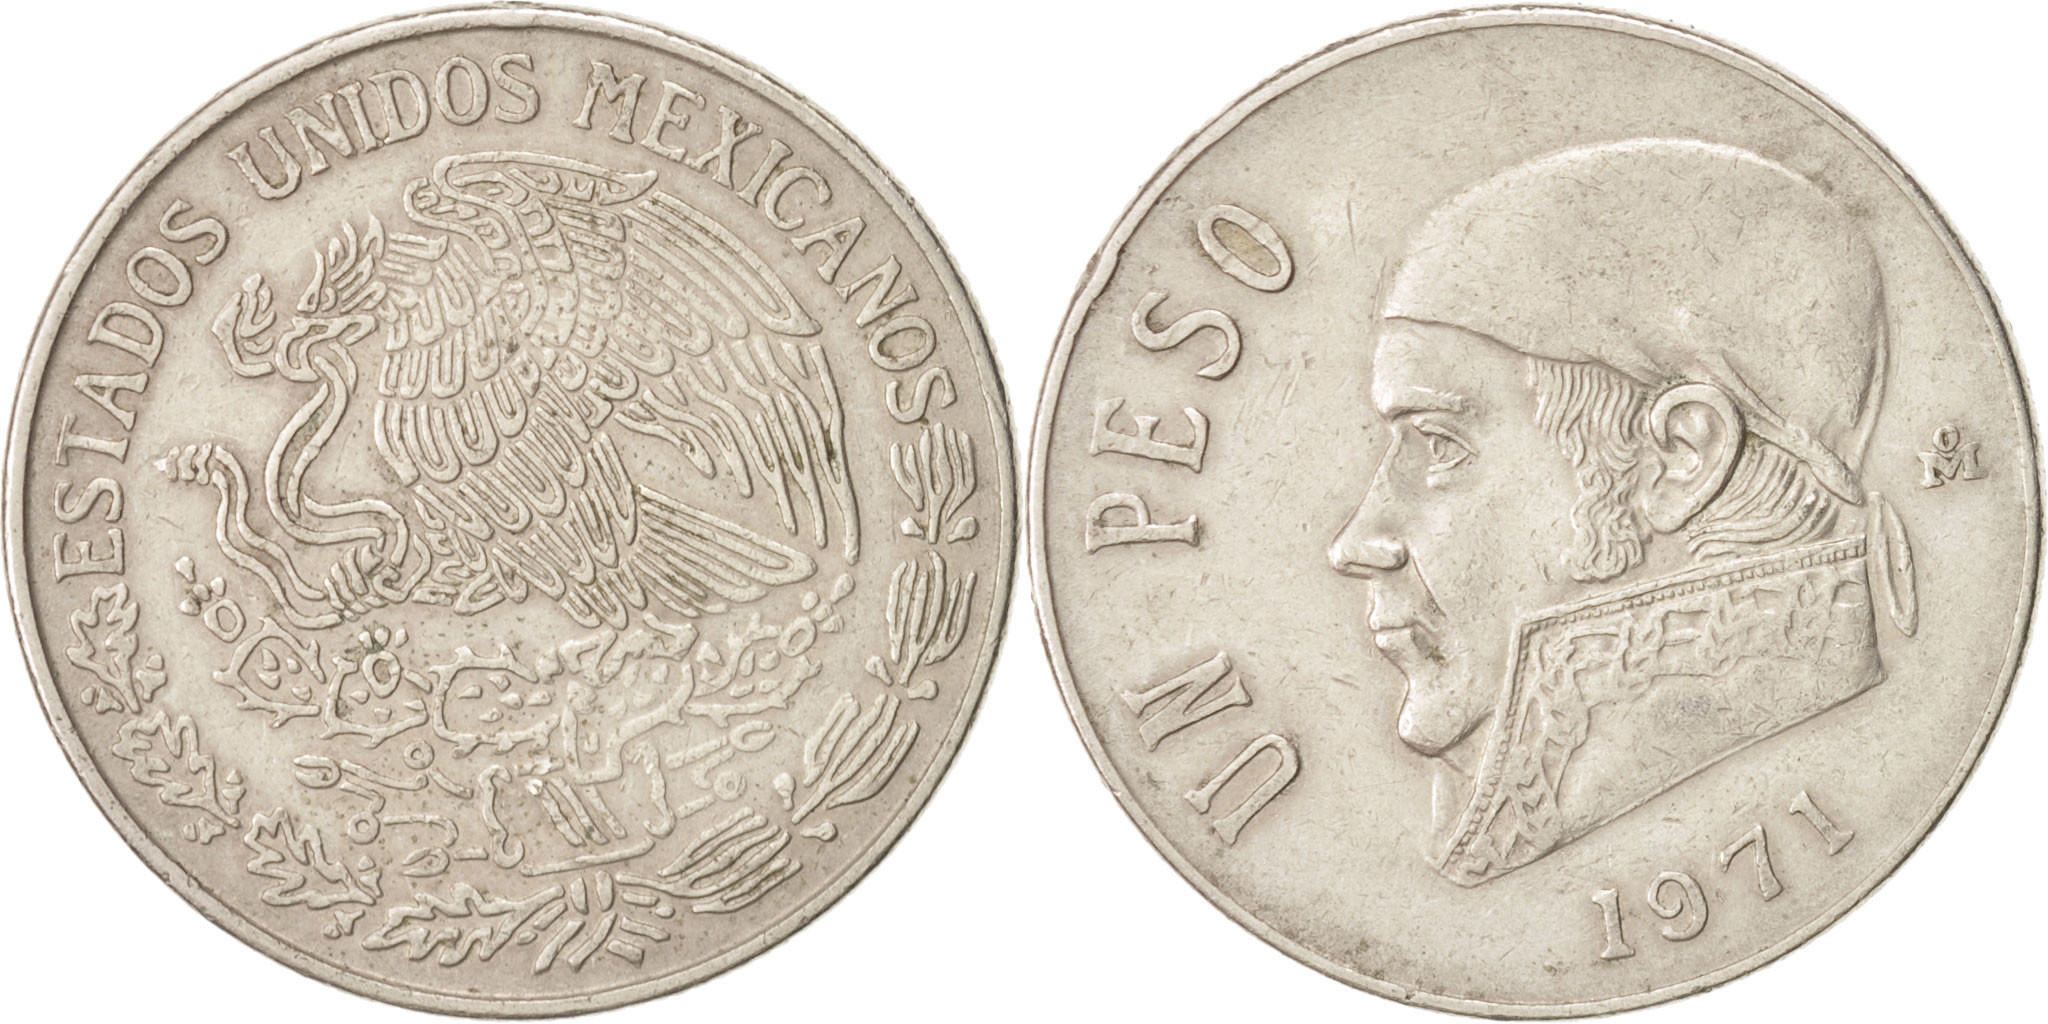 1971 1 peso coin